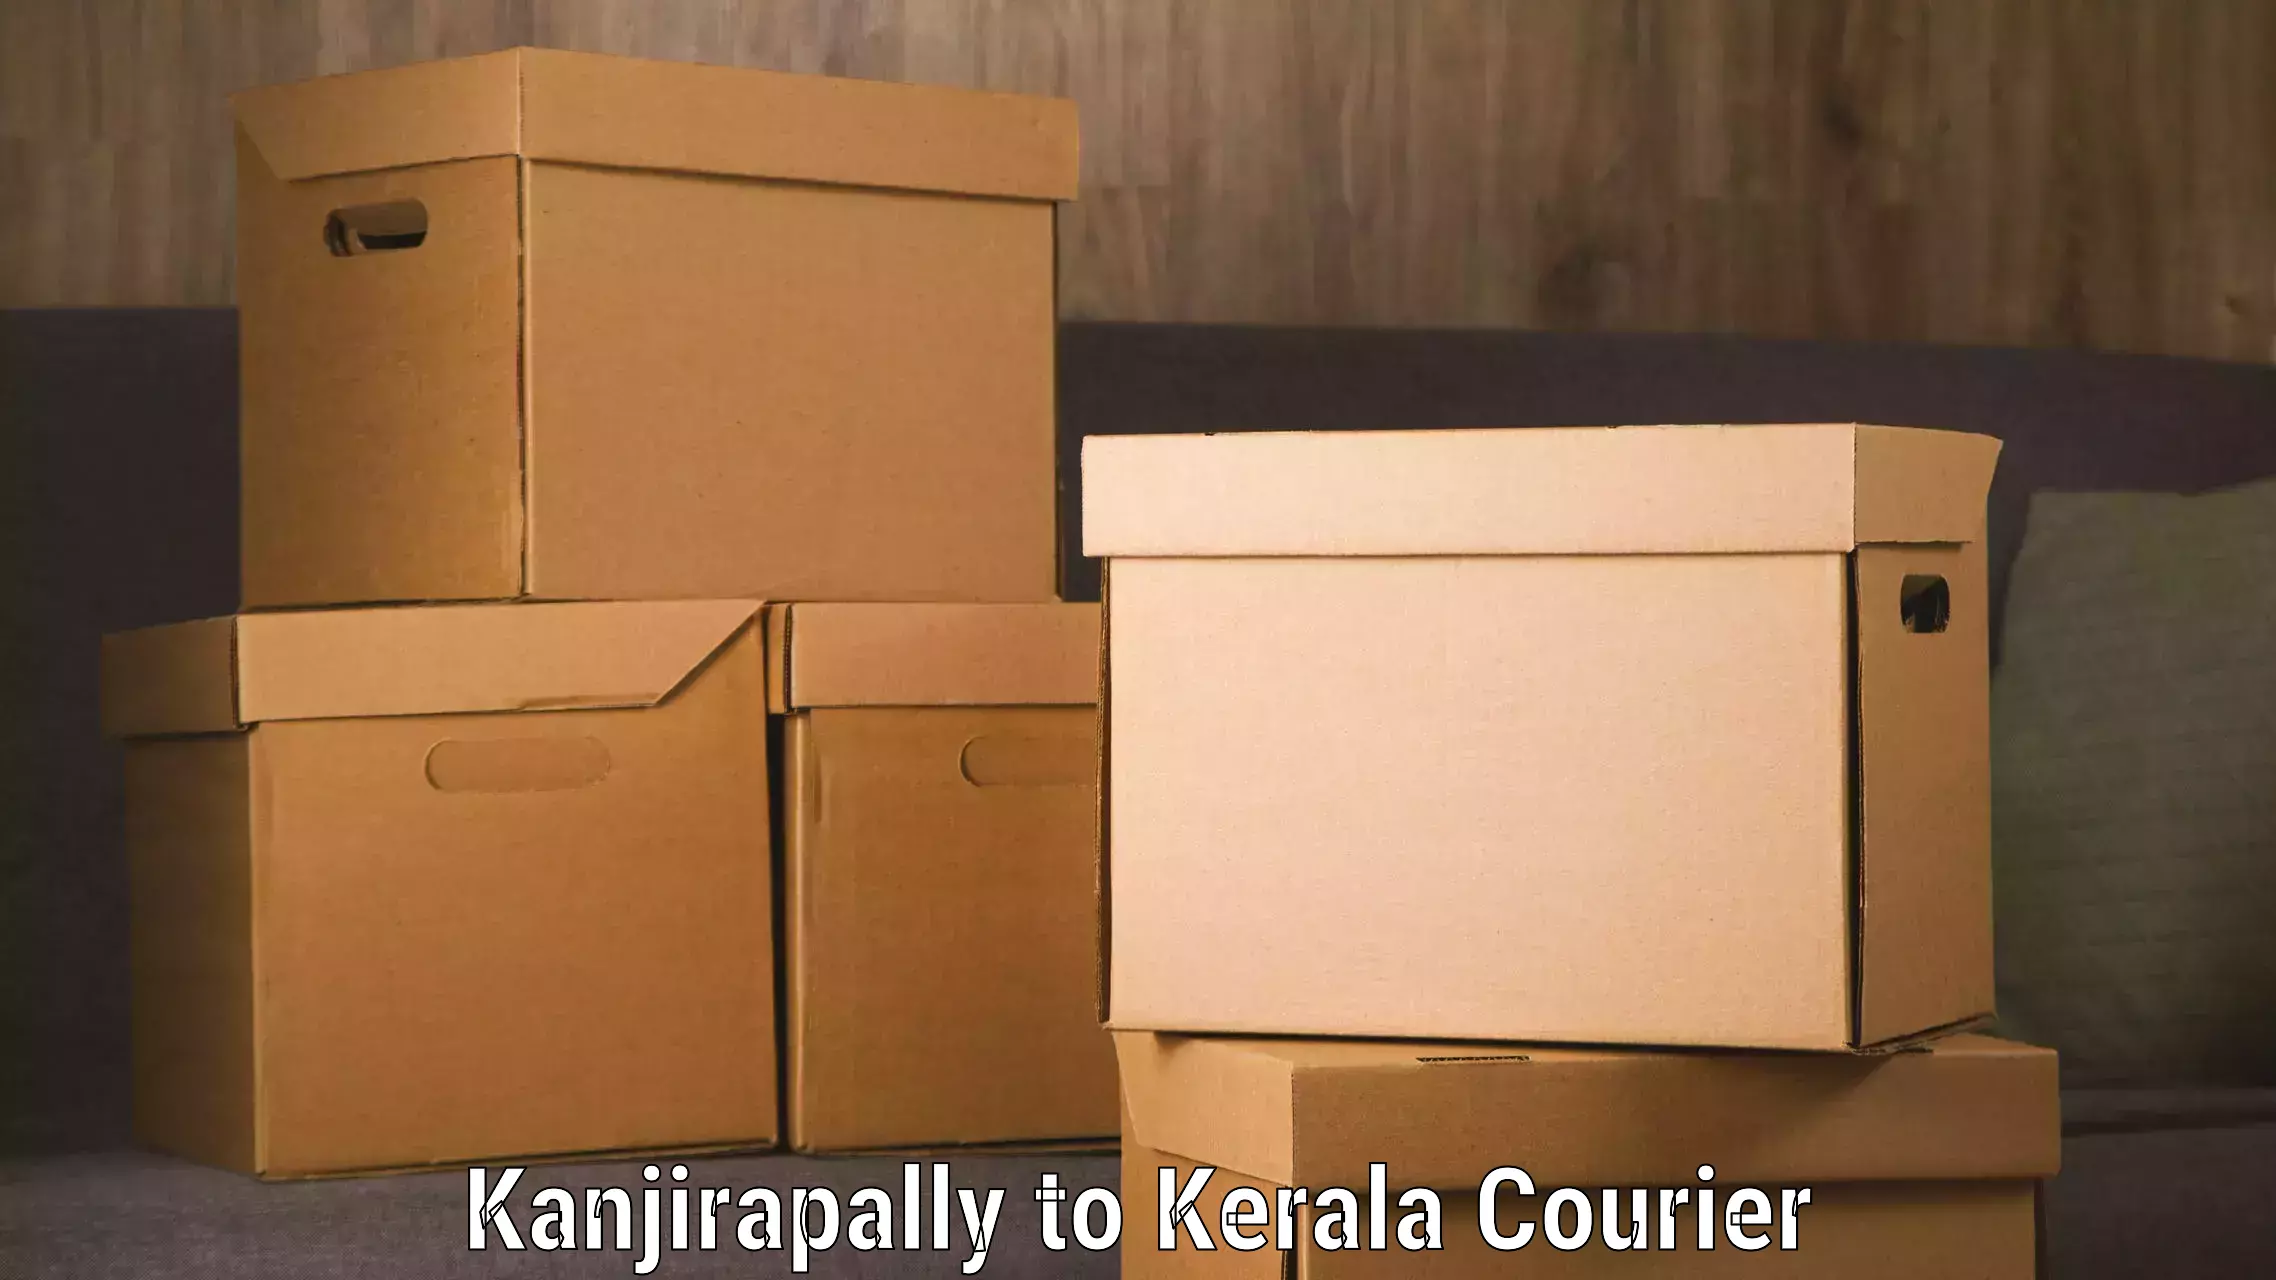 Express logistics providers Kanjirapally to Kerala